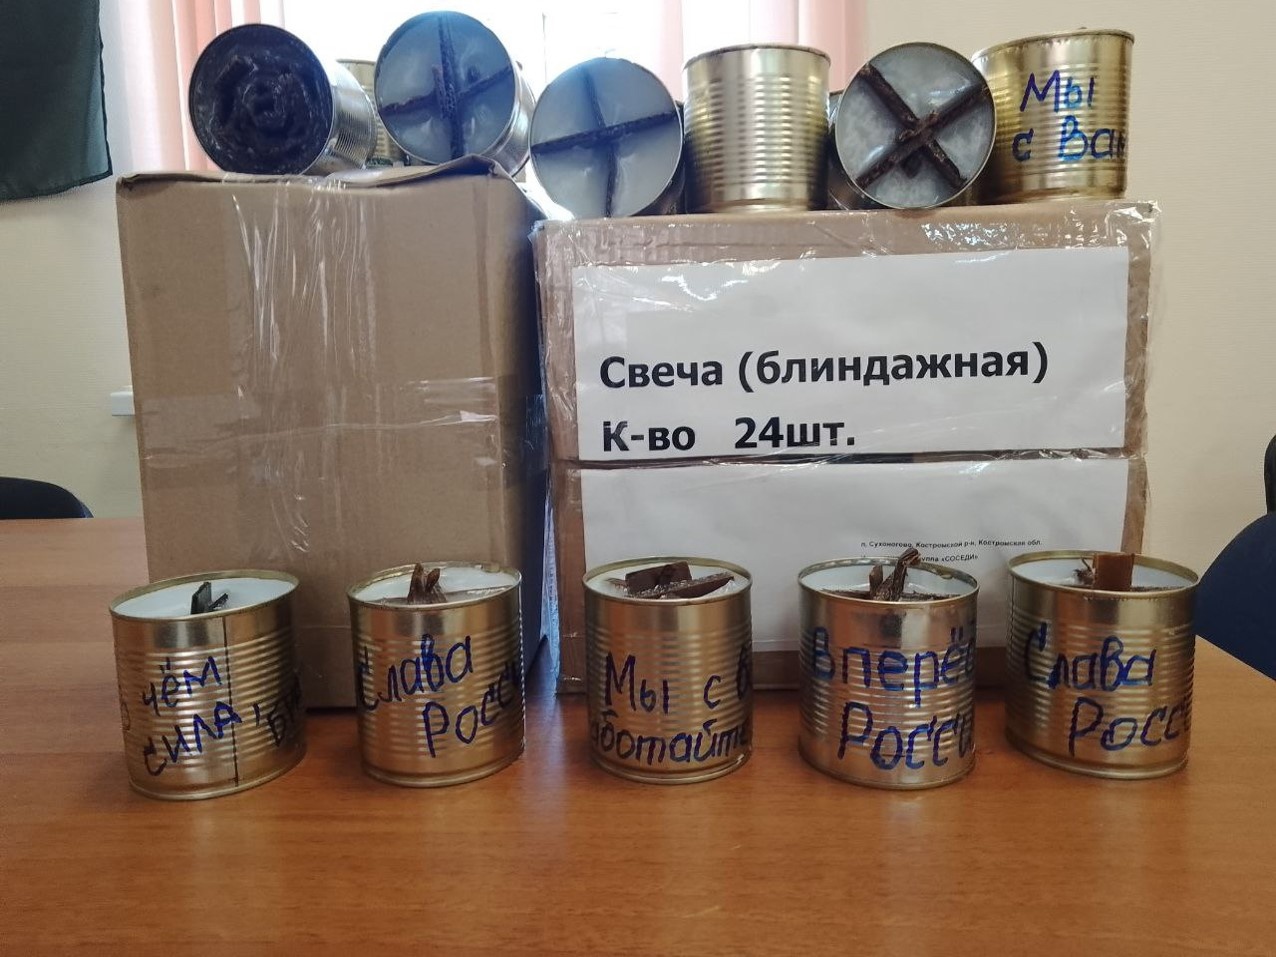 Костромич сделал для бойцов СВО окопные свечи с жизнеутверждающими надписями